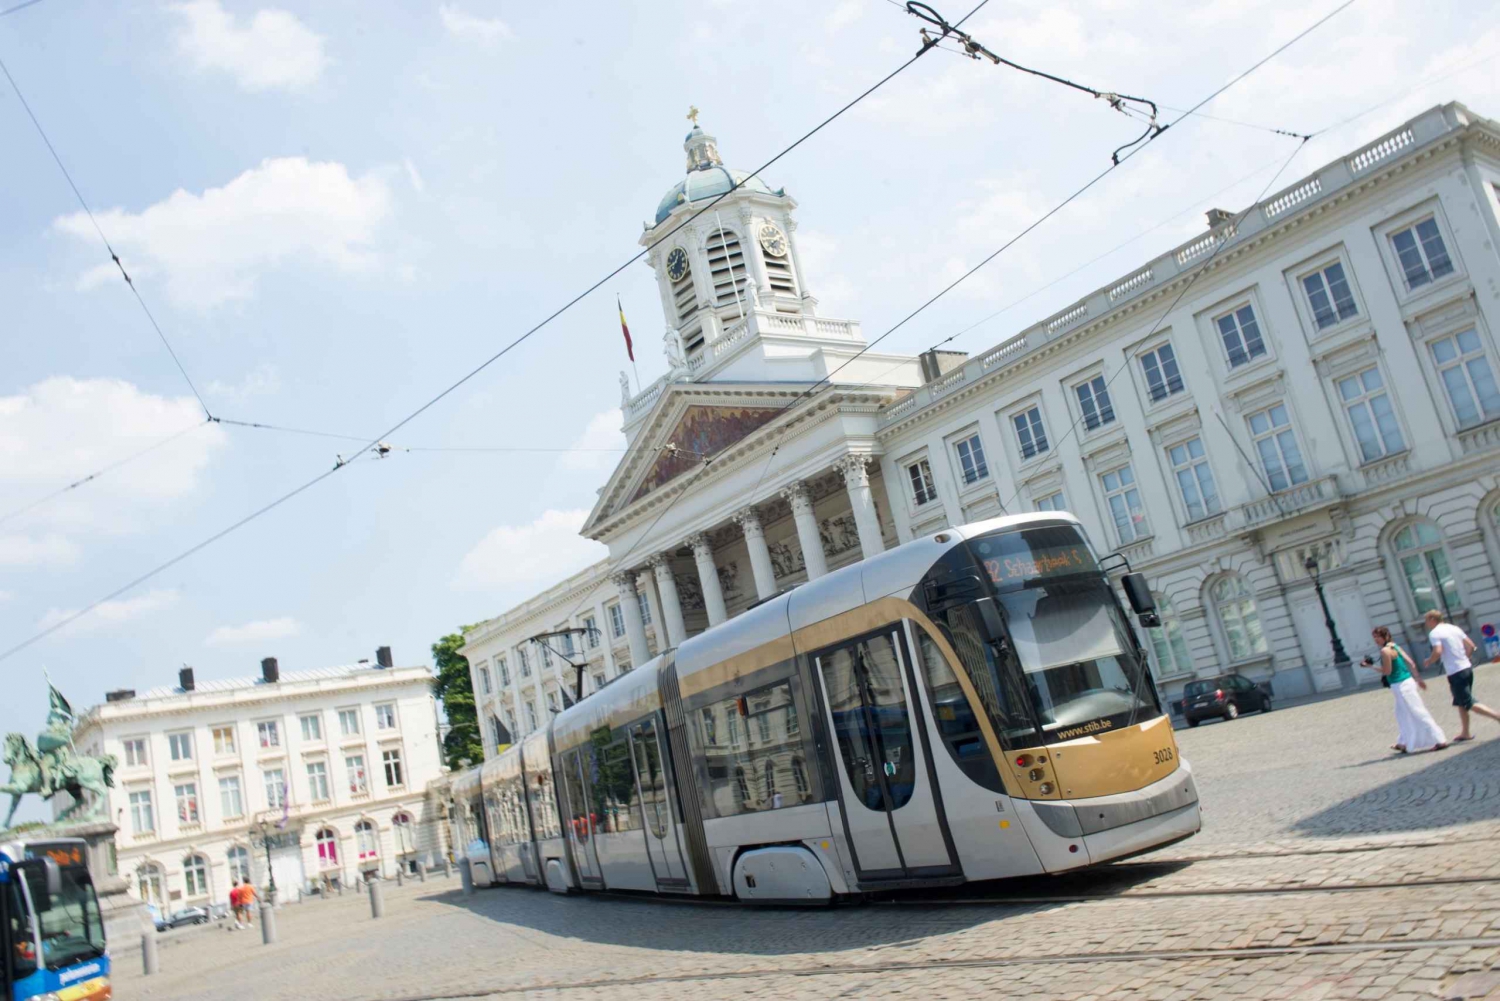 Bruselas: Tarjeta turística con transporte público STIB